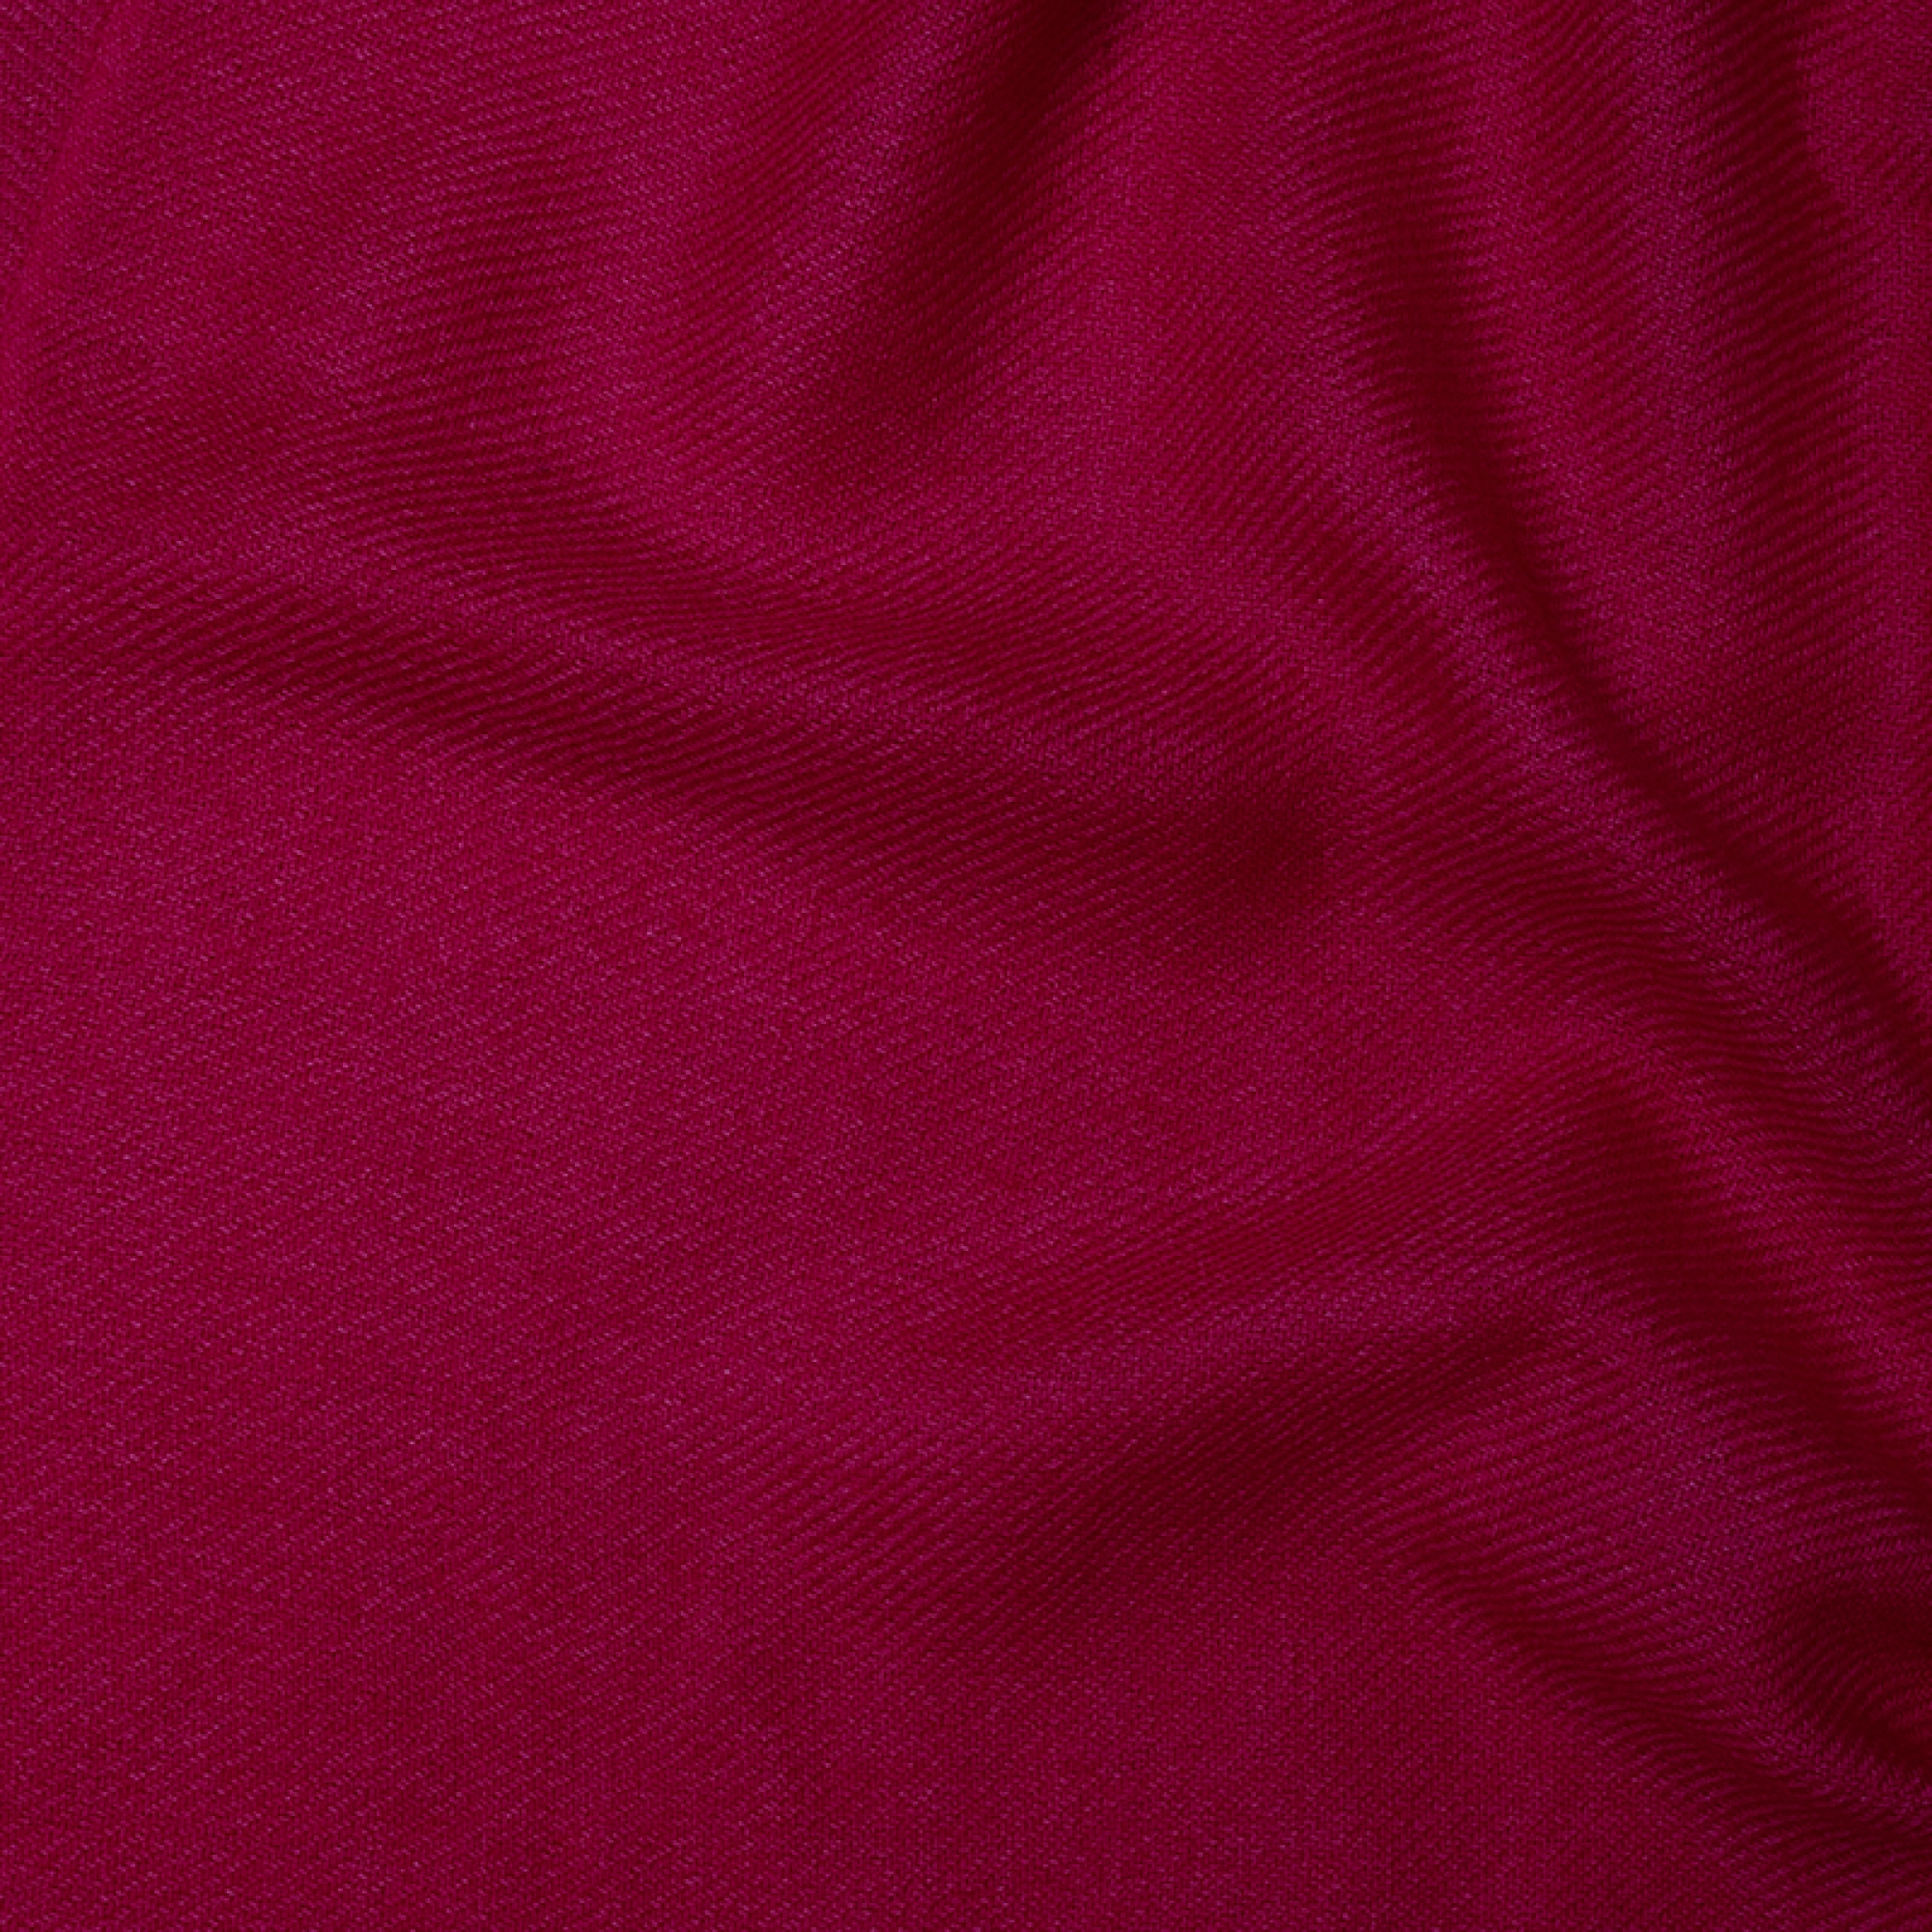 Cachemire accessoires couvertures plaids toodoo plain l 220 x 220 framboise 220x220cm